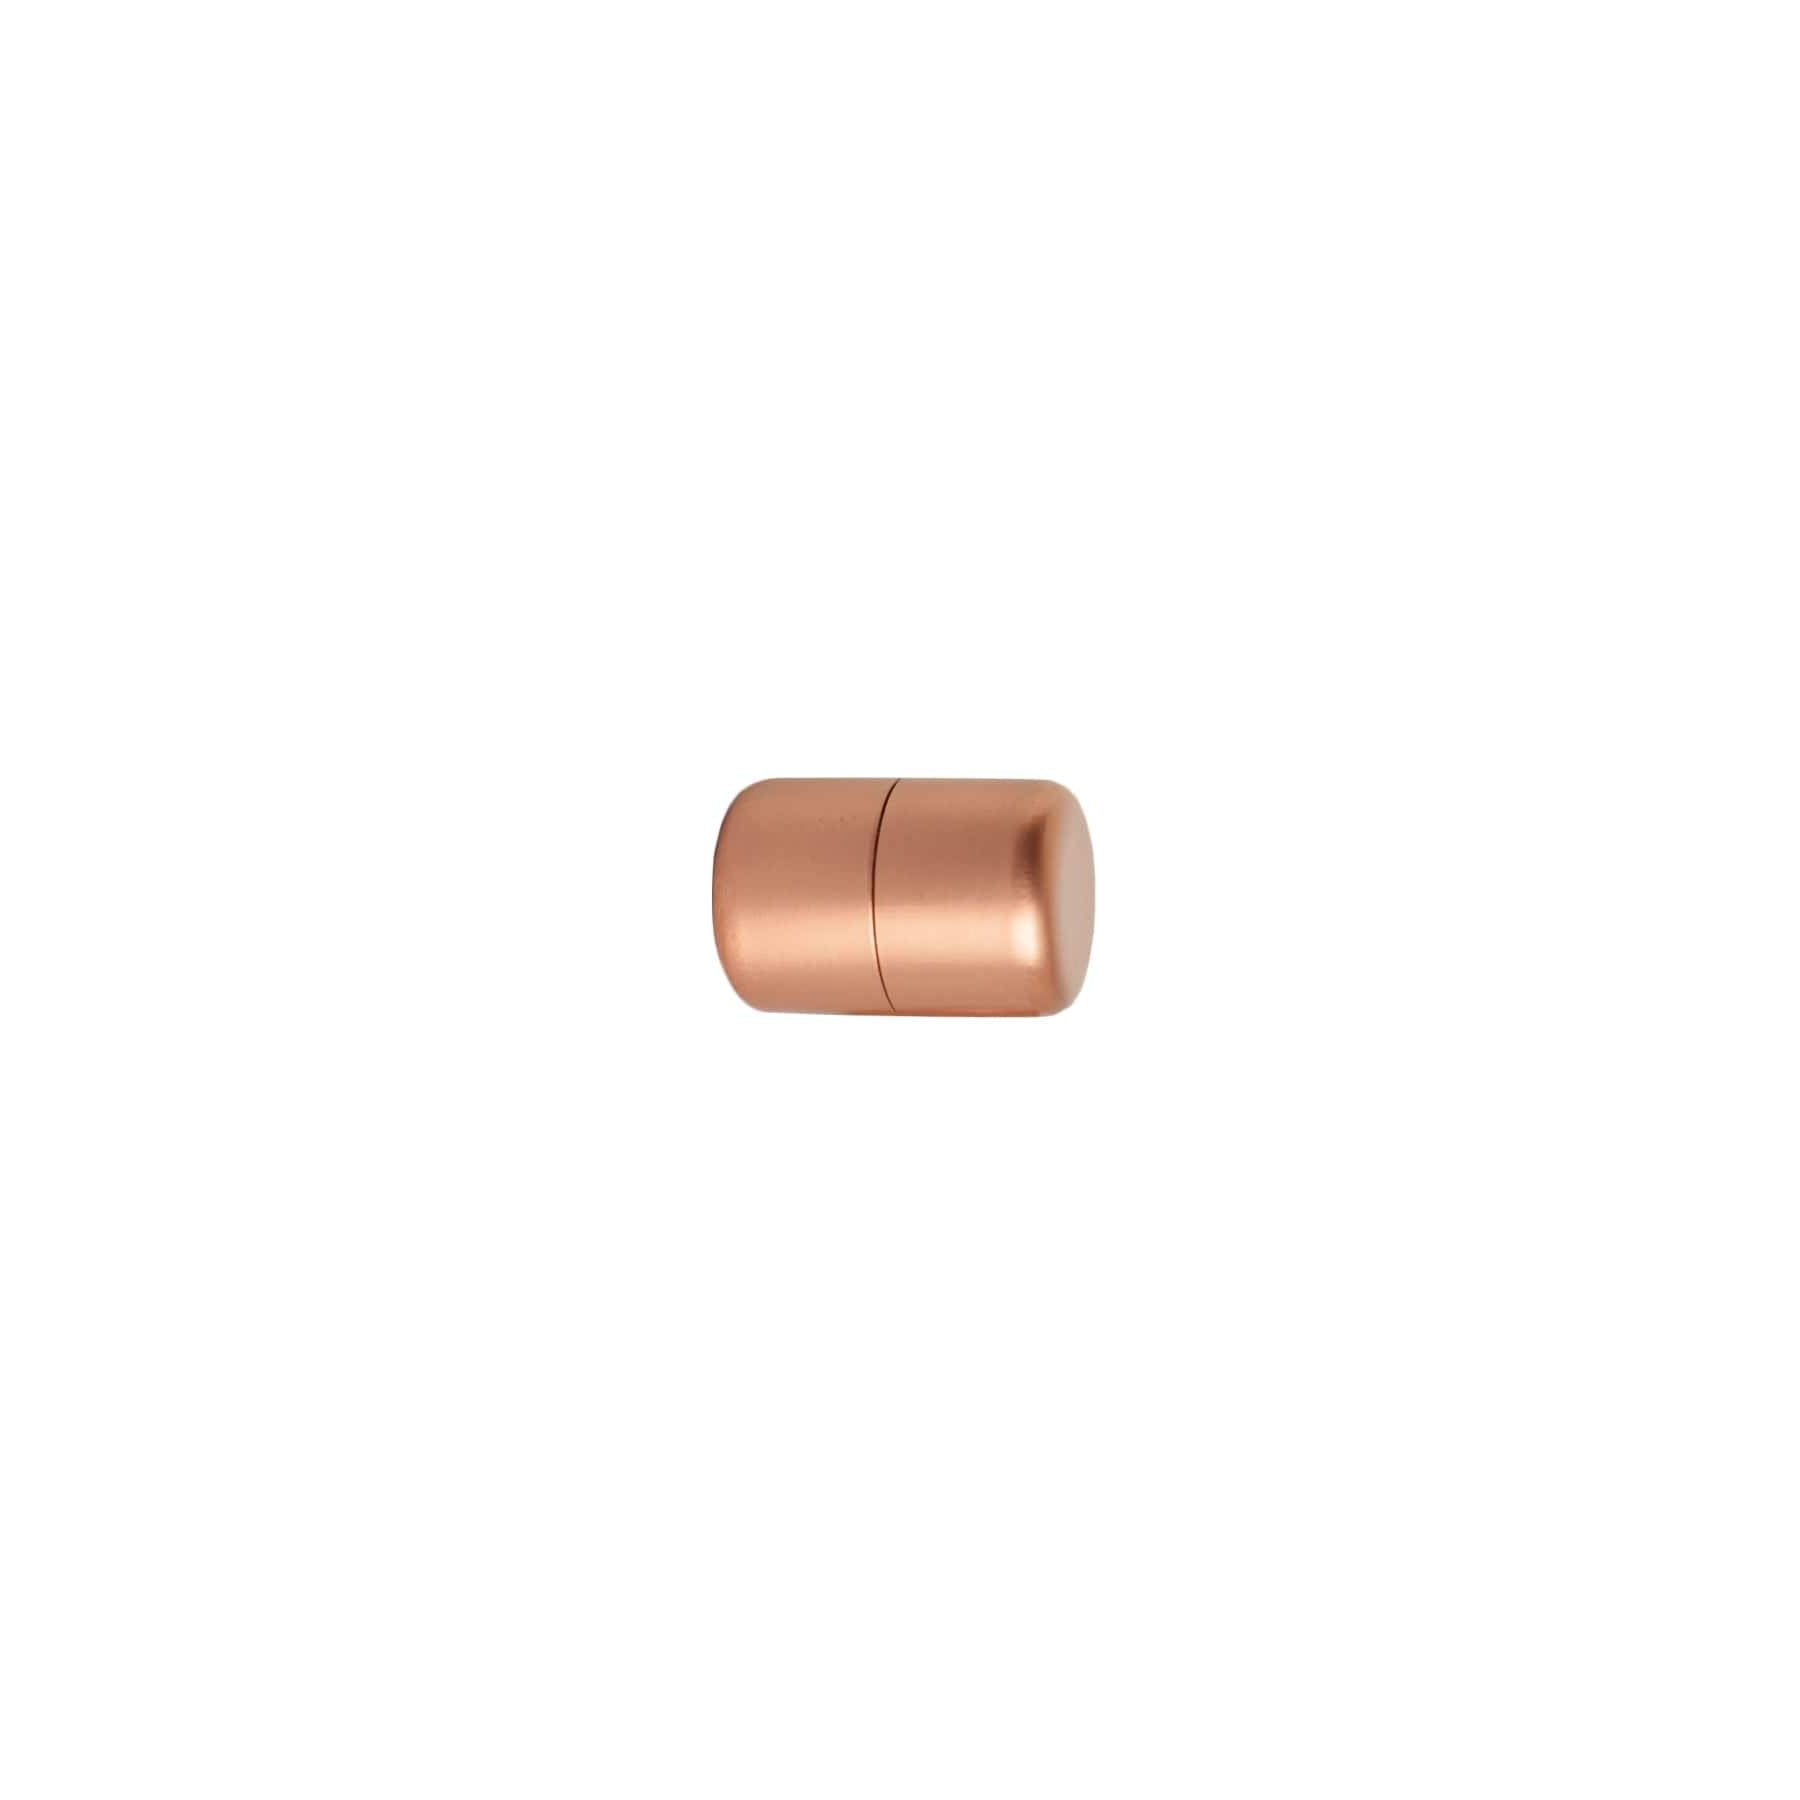 Copper Knob - Bar - White Background